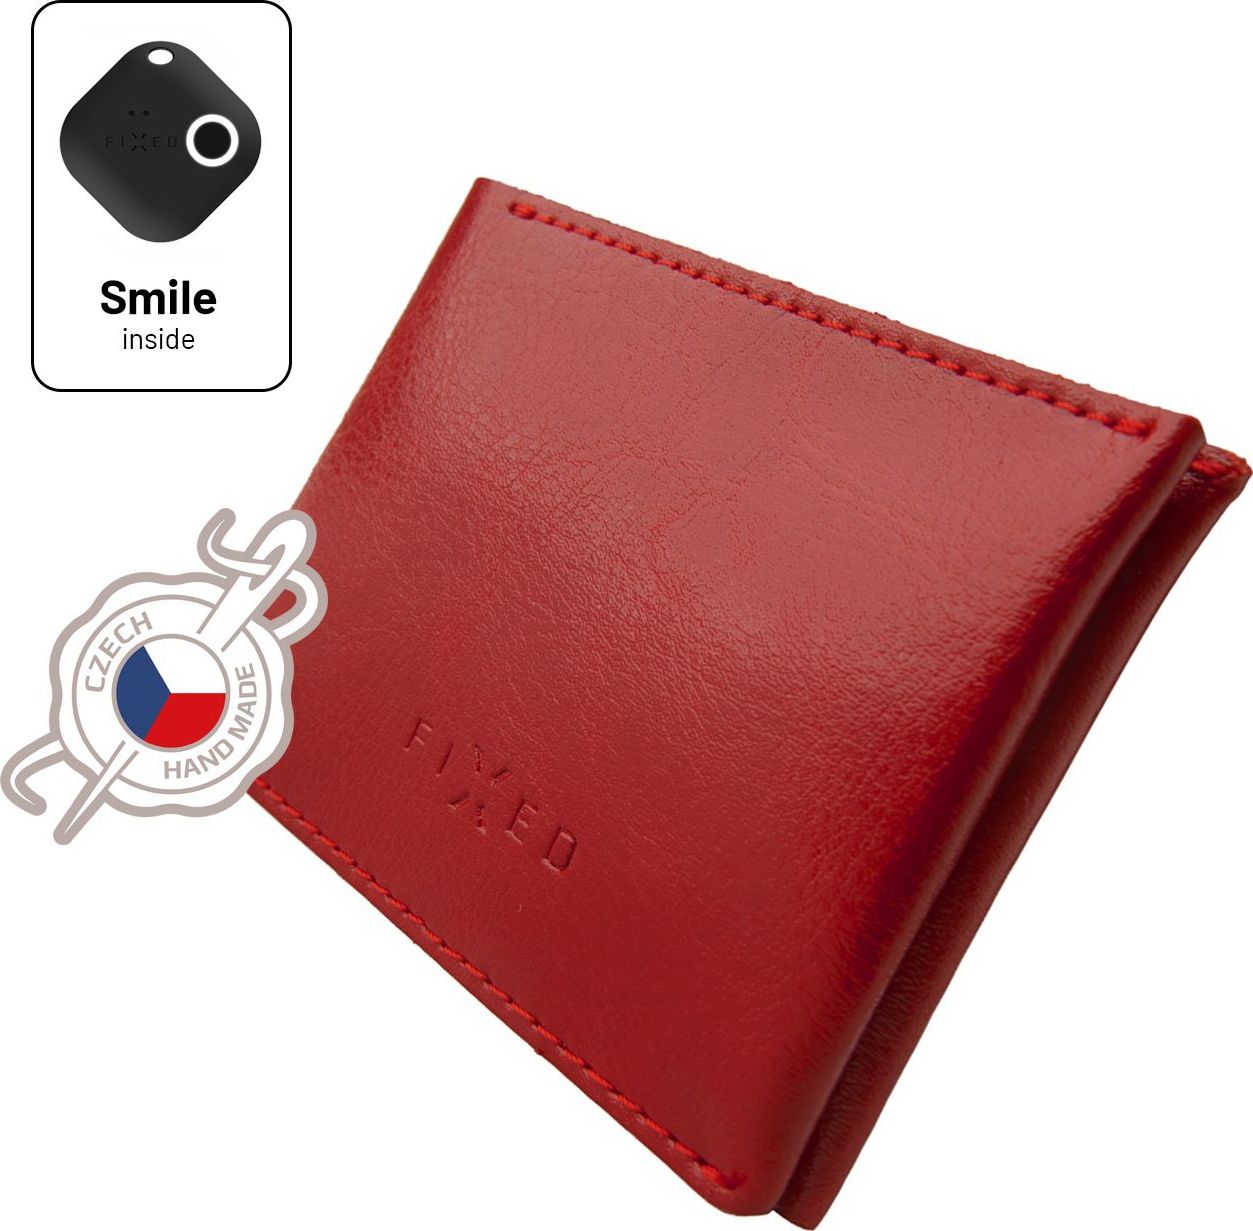 Kožená peněženka Smile Wallet se smart trackerem FIXED Smile s motion senzorem, červená